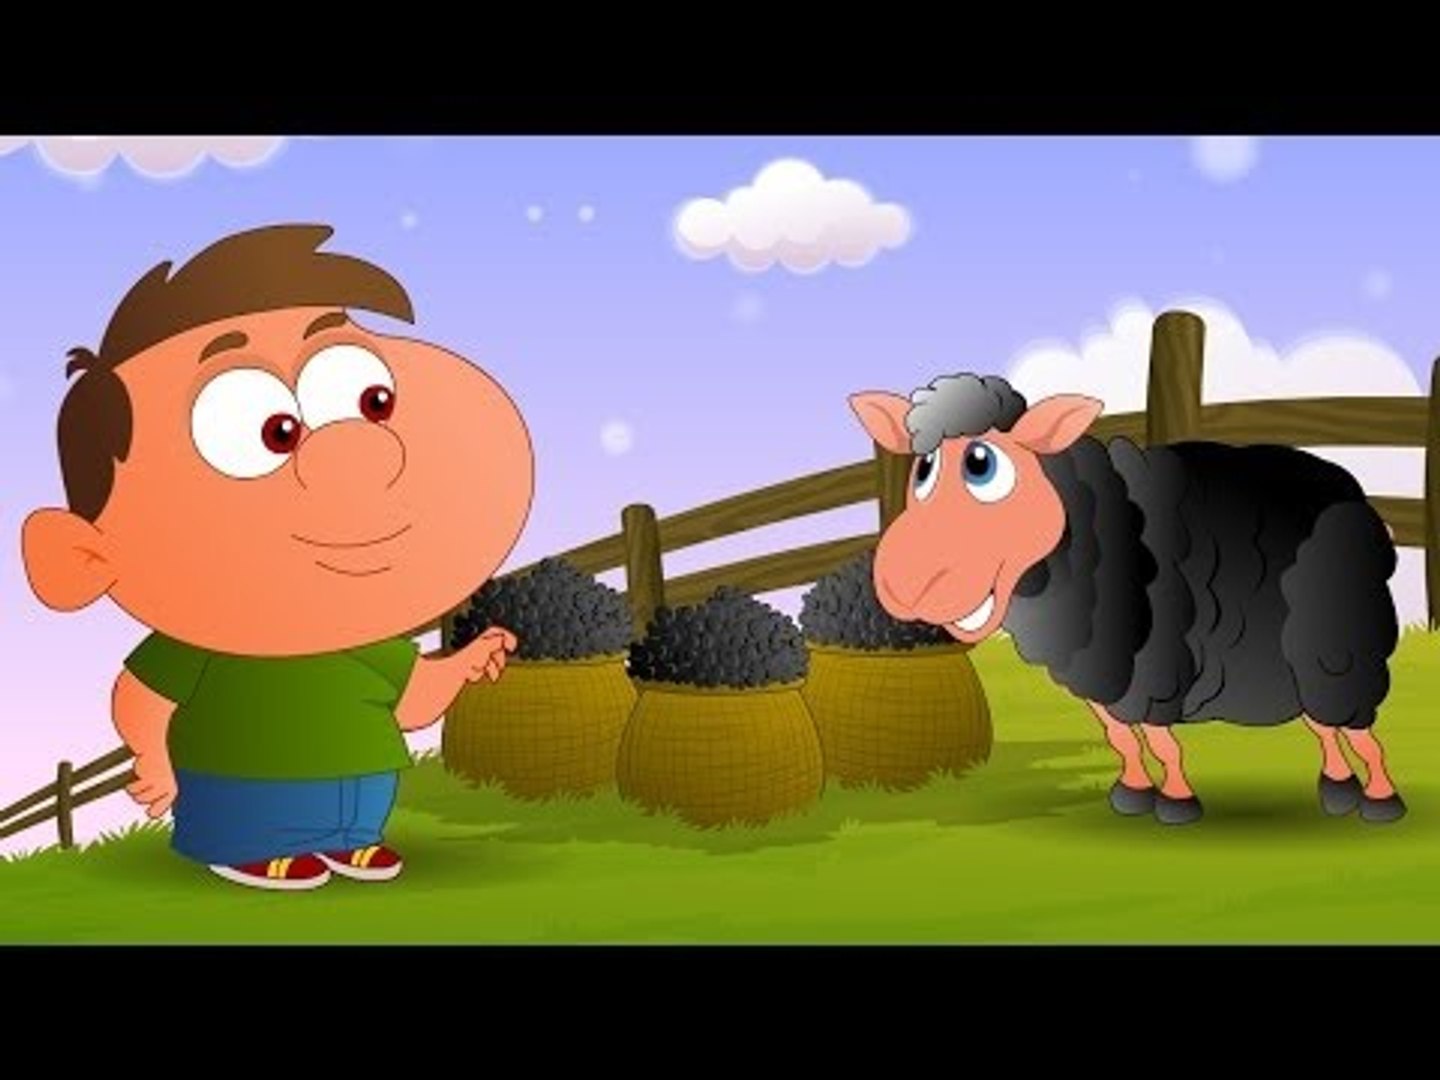 Baa Baa Black Sheep - English Nursery Rhymes - Cartoon And Animated Rhymes  - video Dailymotion